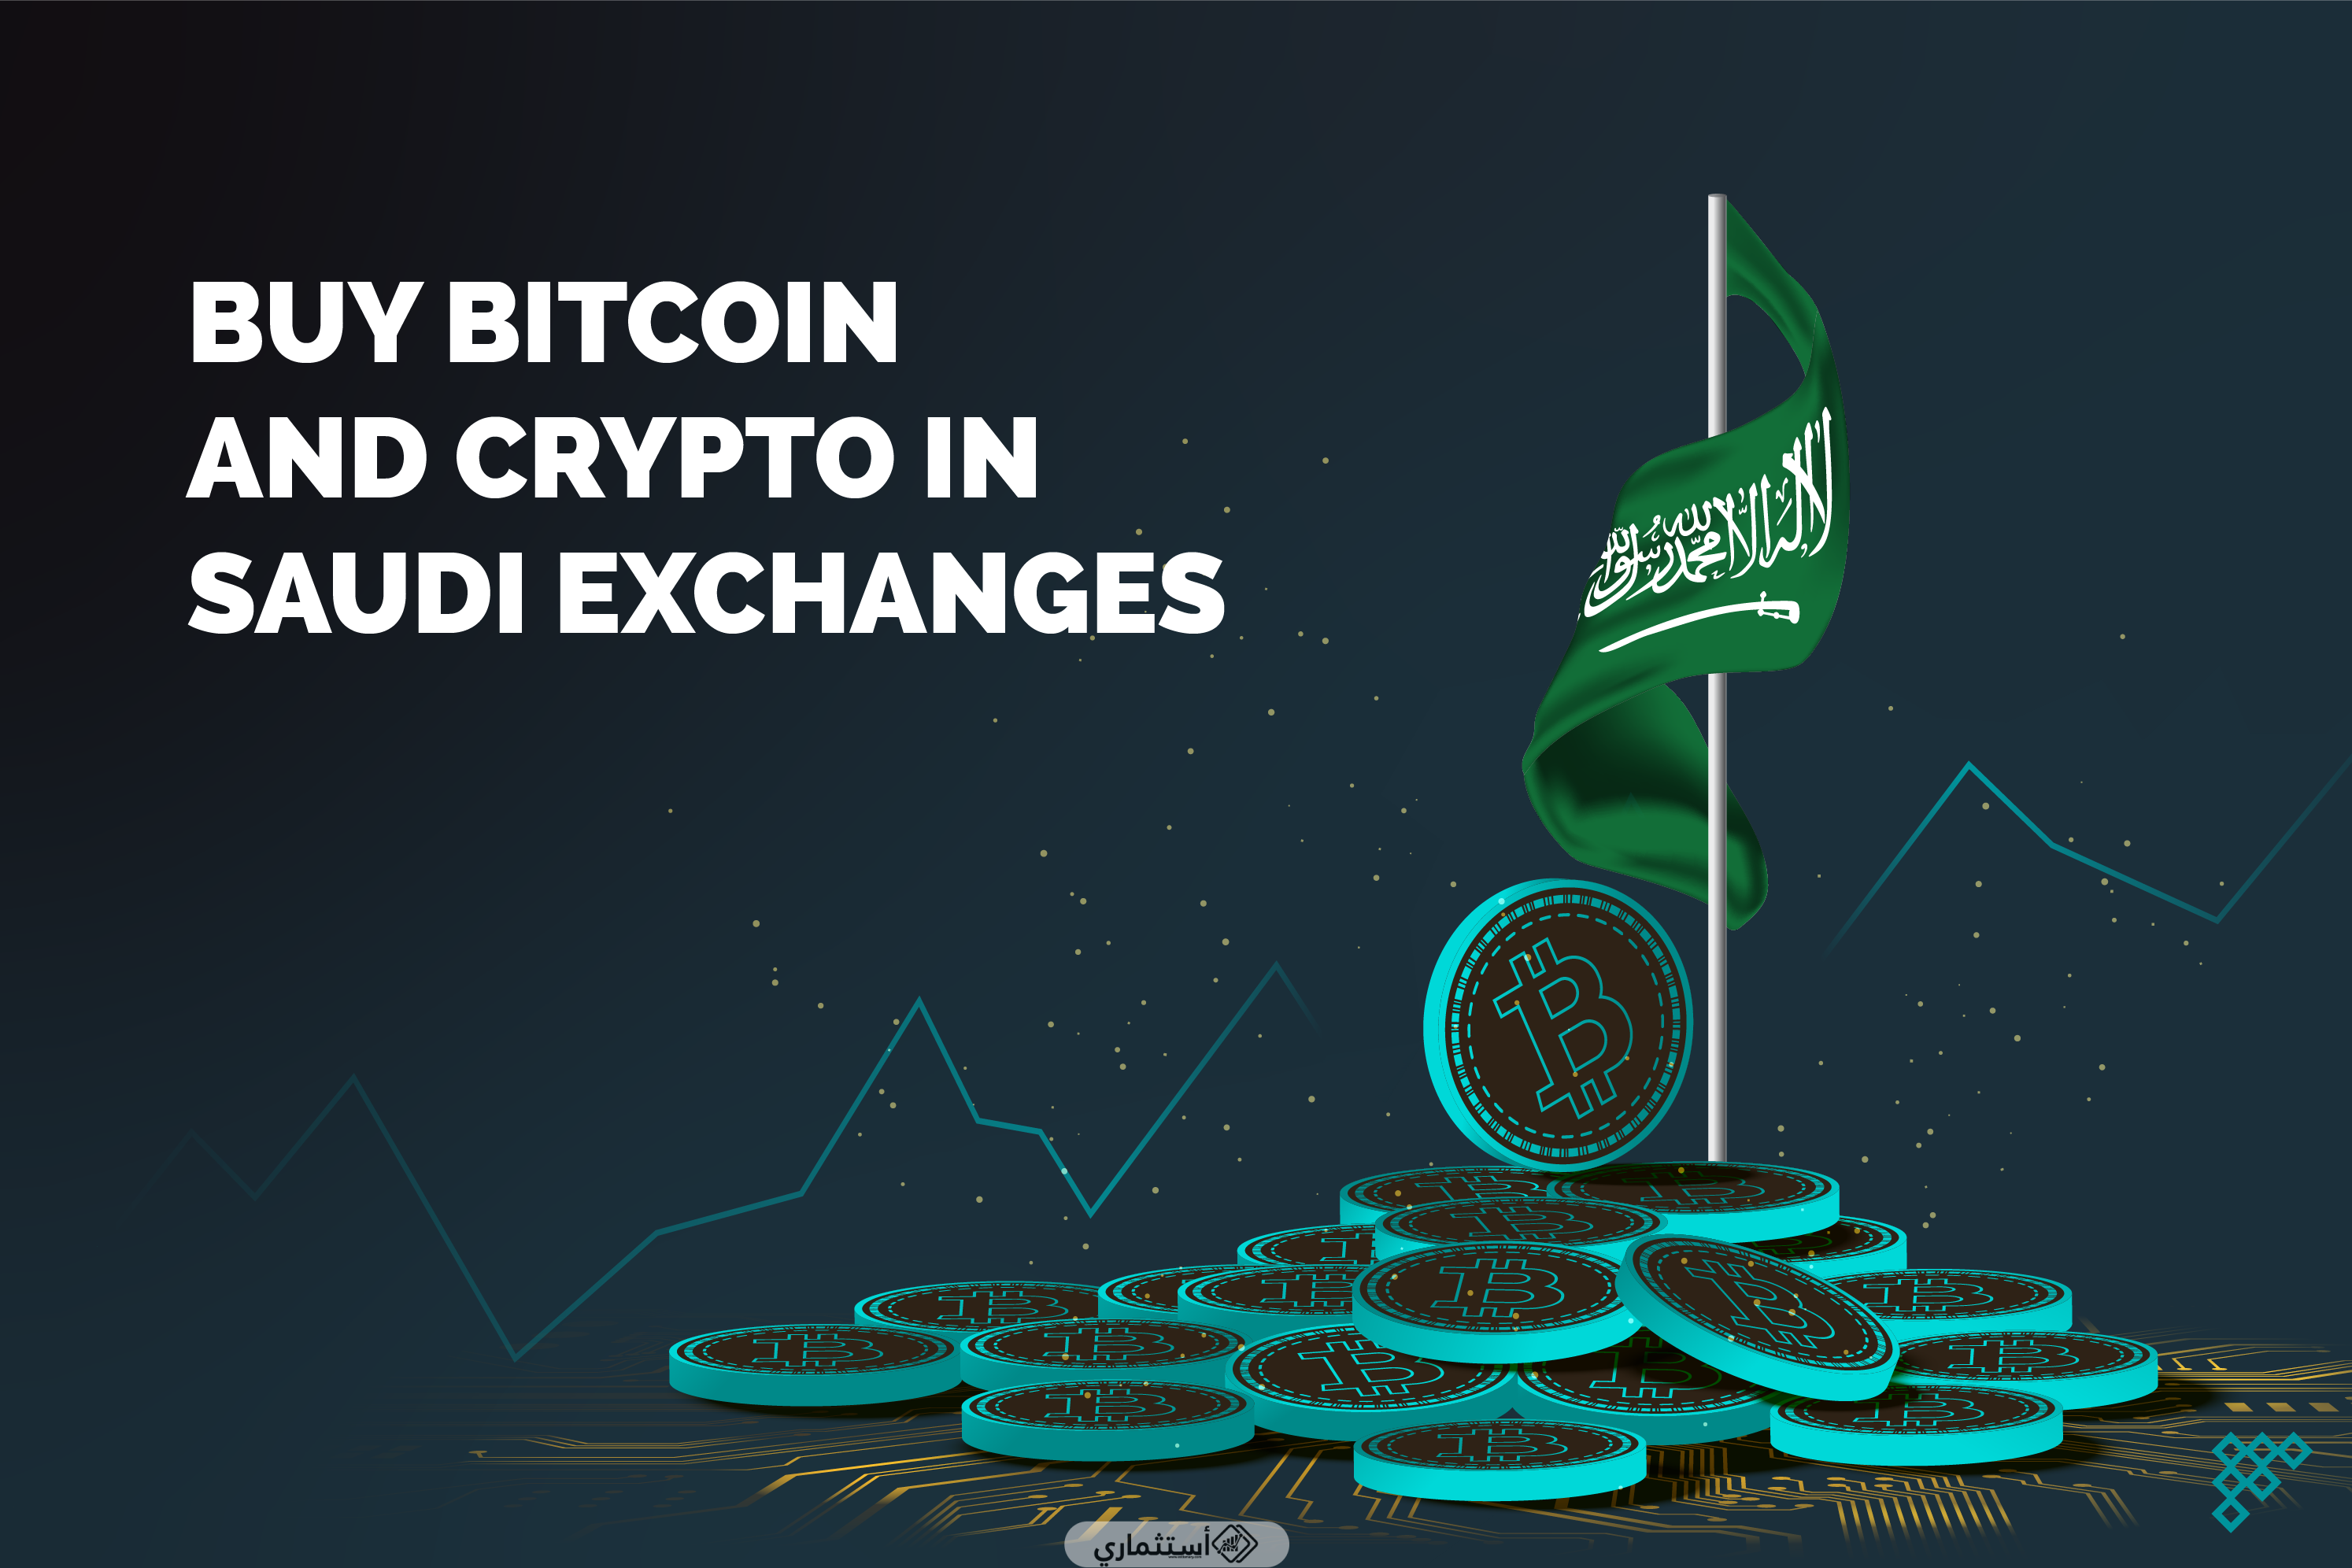 أفضل منصات تداول العملات الرقمية في السعودية